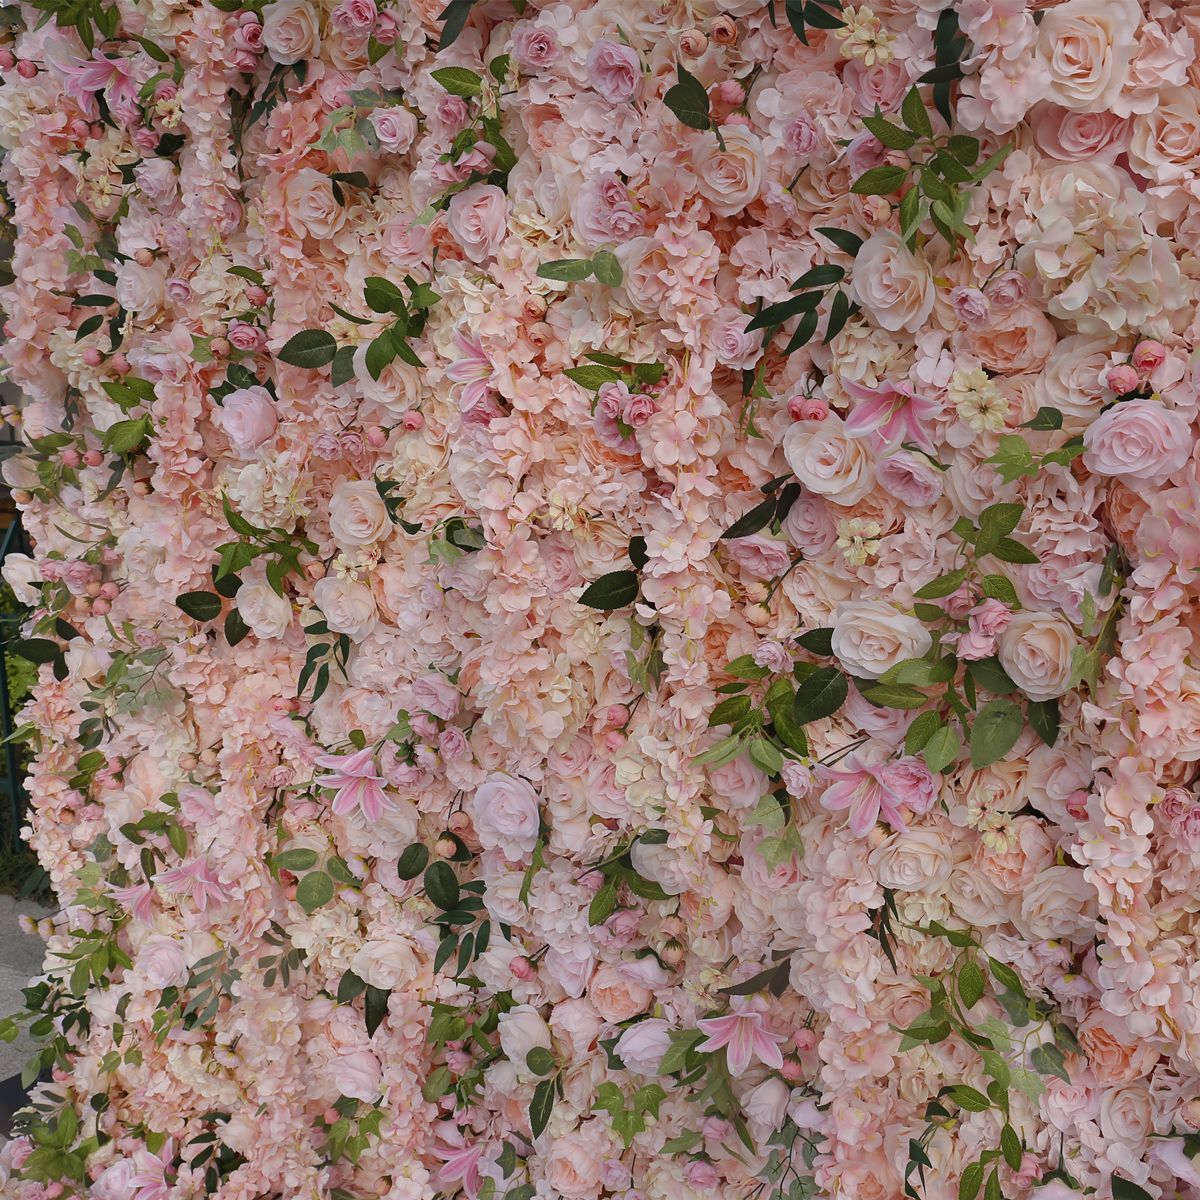 गुलाबी कपड़ा नीचे सिमुलेशन फूल दीवार पृष्ठभूमि दीवार अमेज़न विदेश व्यापार 5 डी शादी के स्वागत सजावट